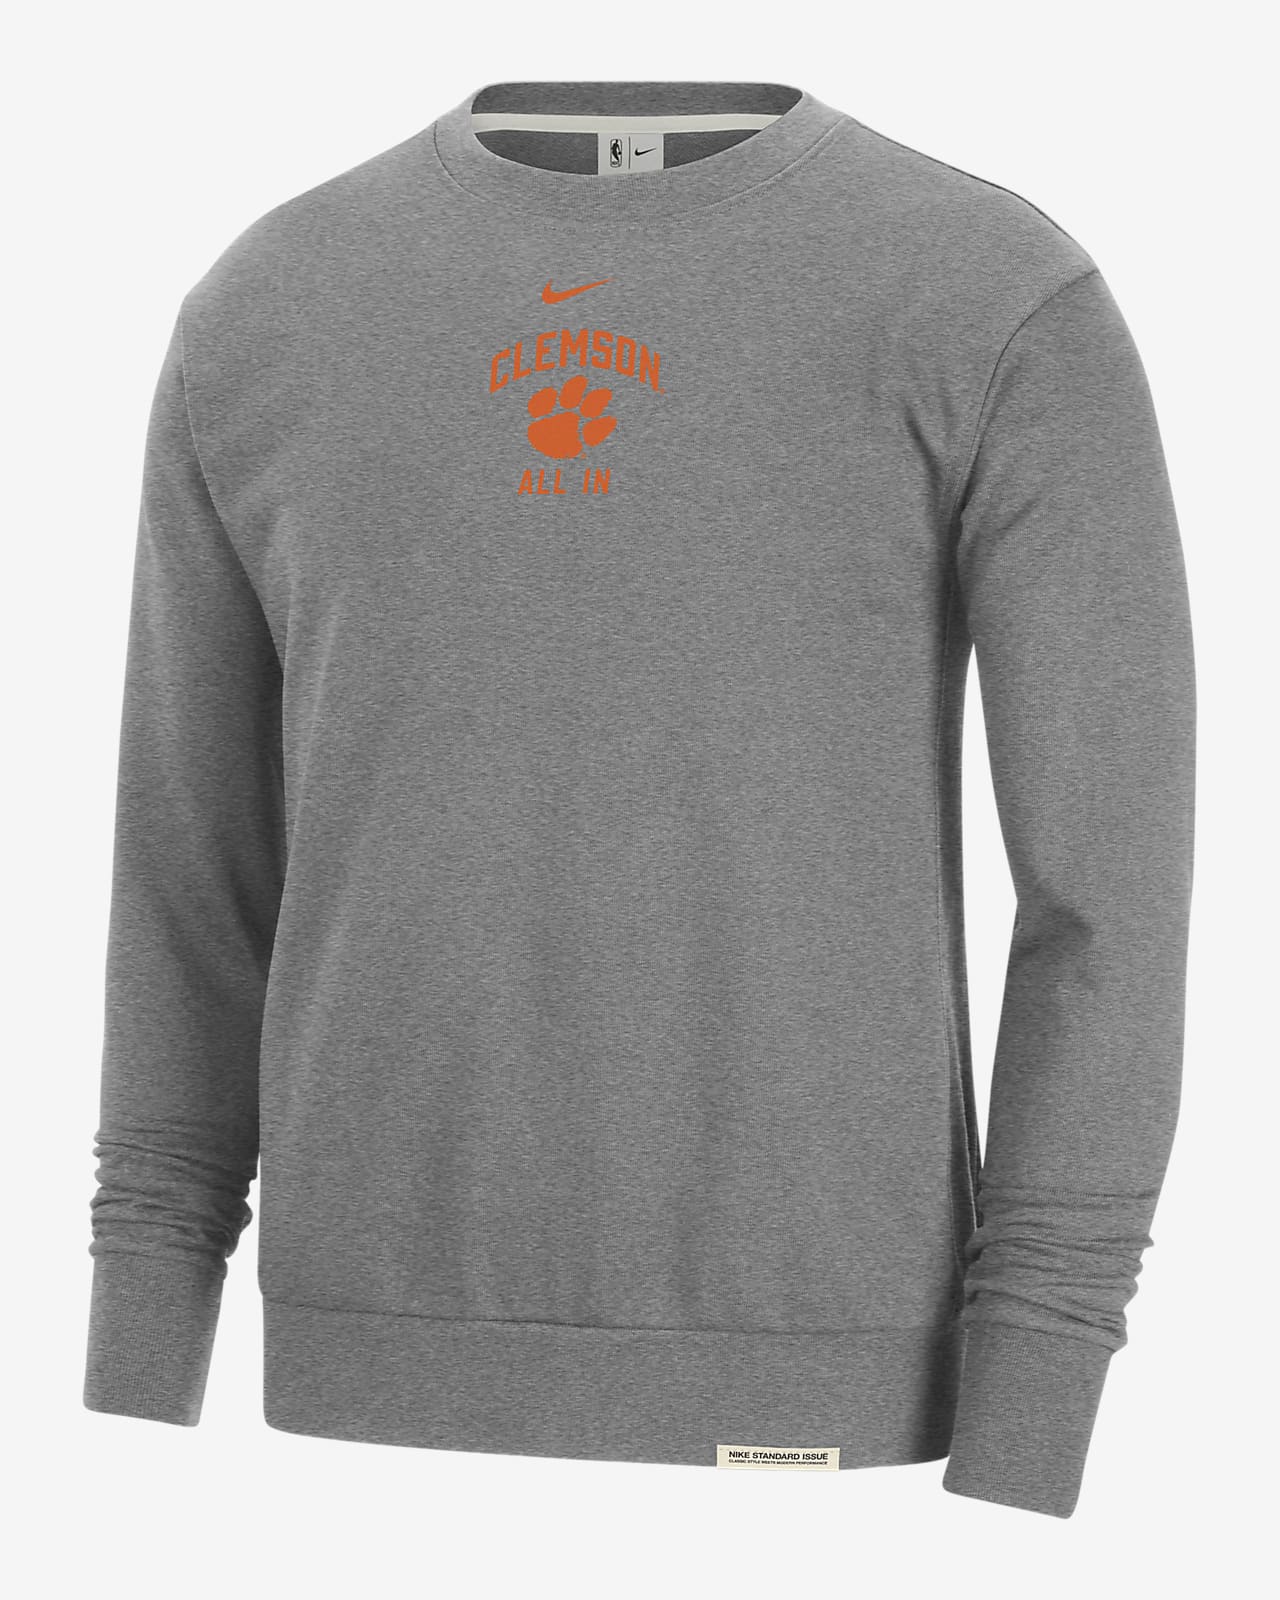 Clemson Standard Issue Men's Nike College Fleece Crew-Neck Sweatshirt